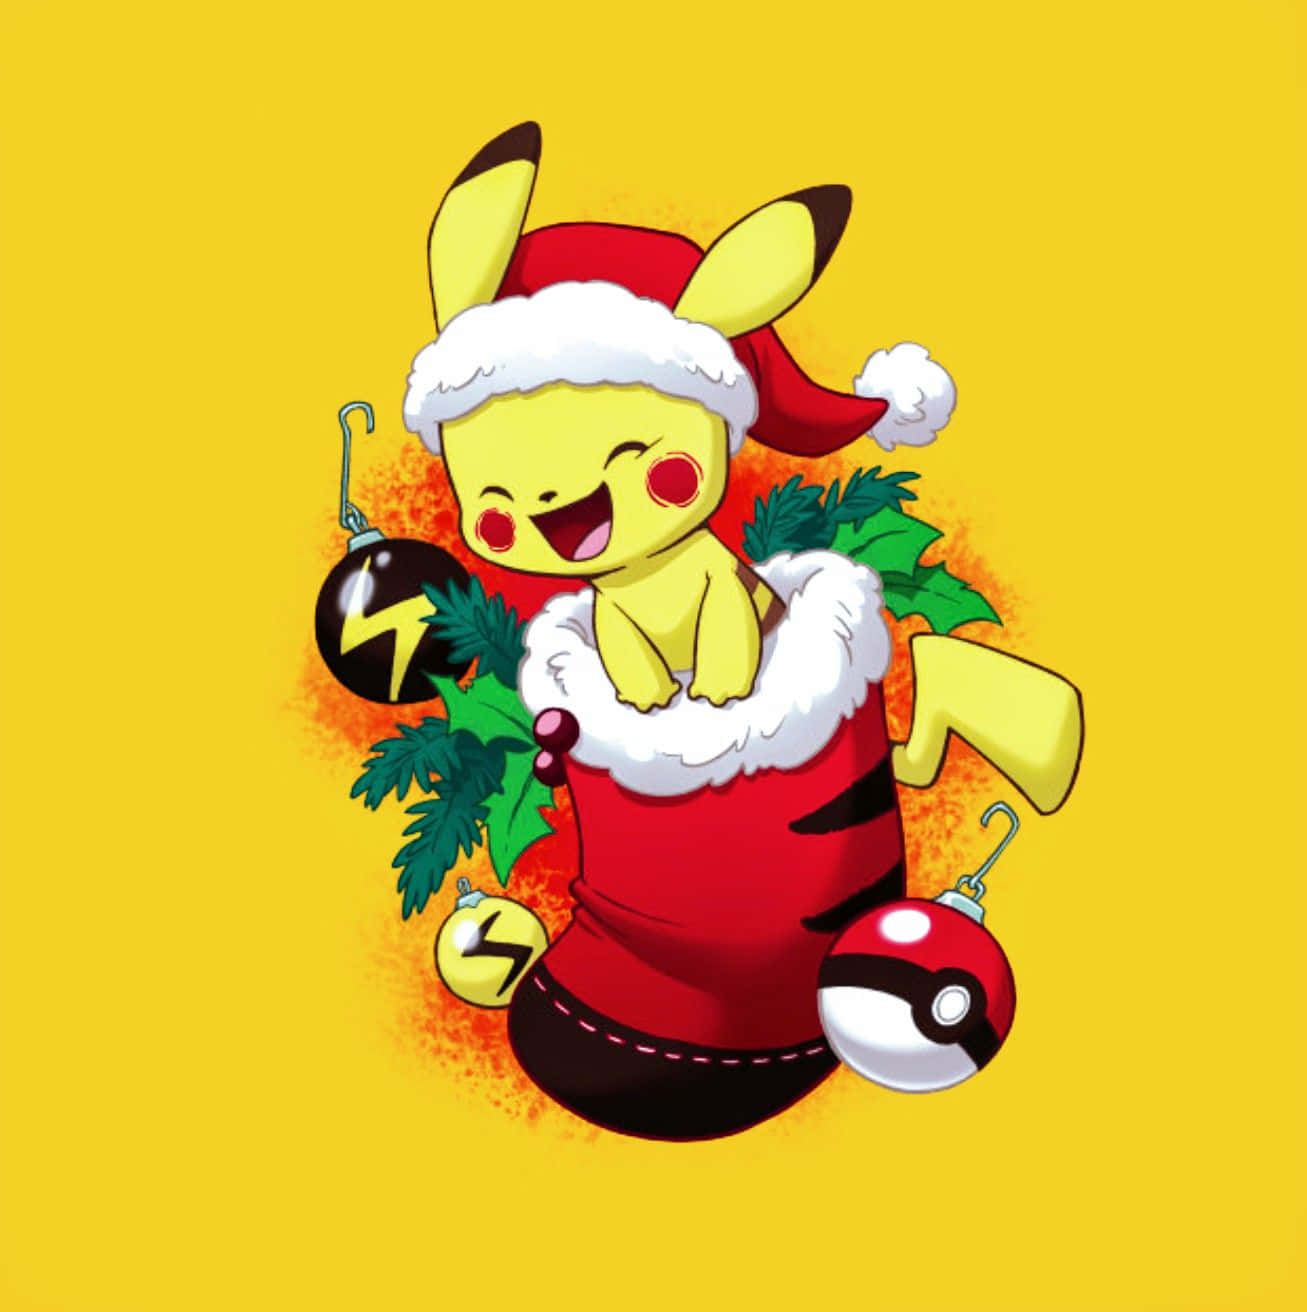 Pokémonjul-pikachu I En Julstrumpa. Wallpaper